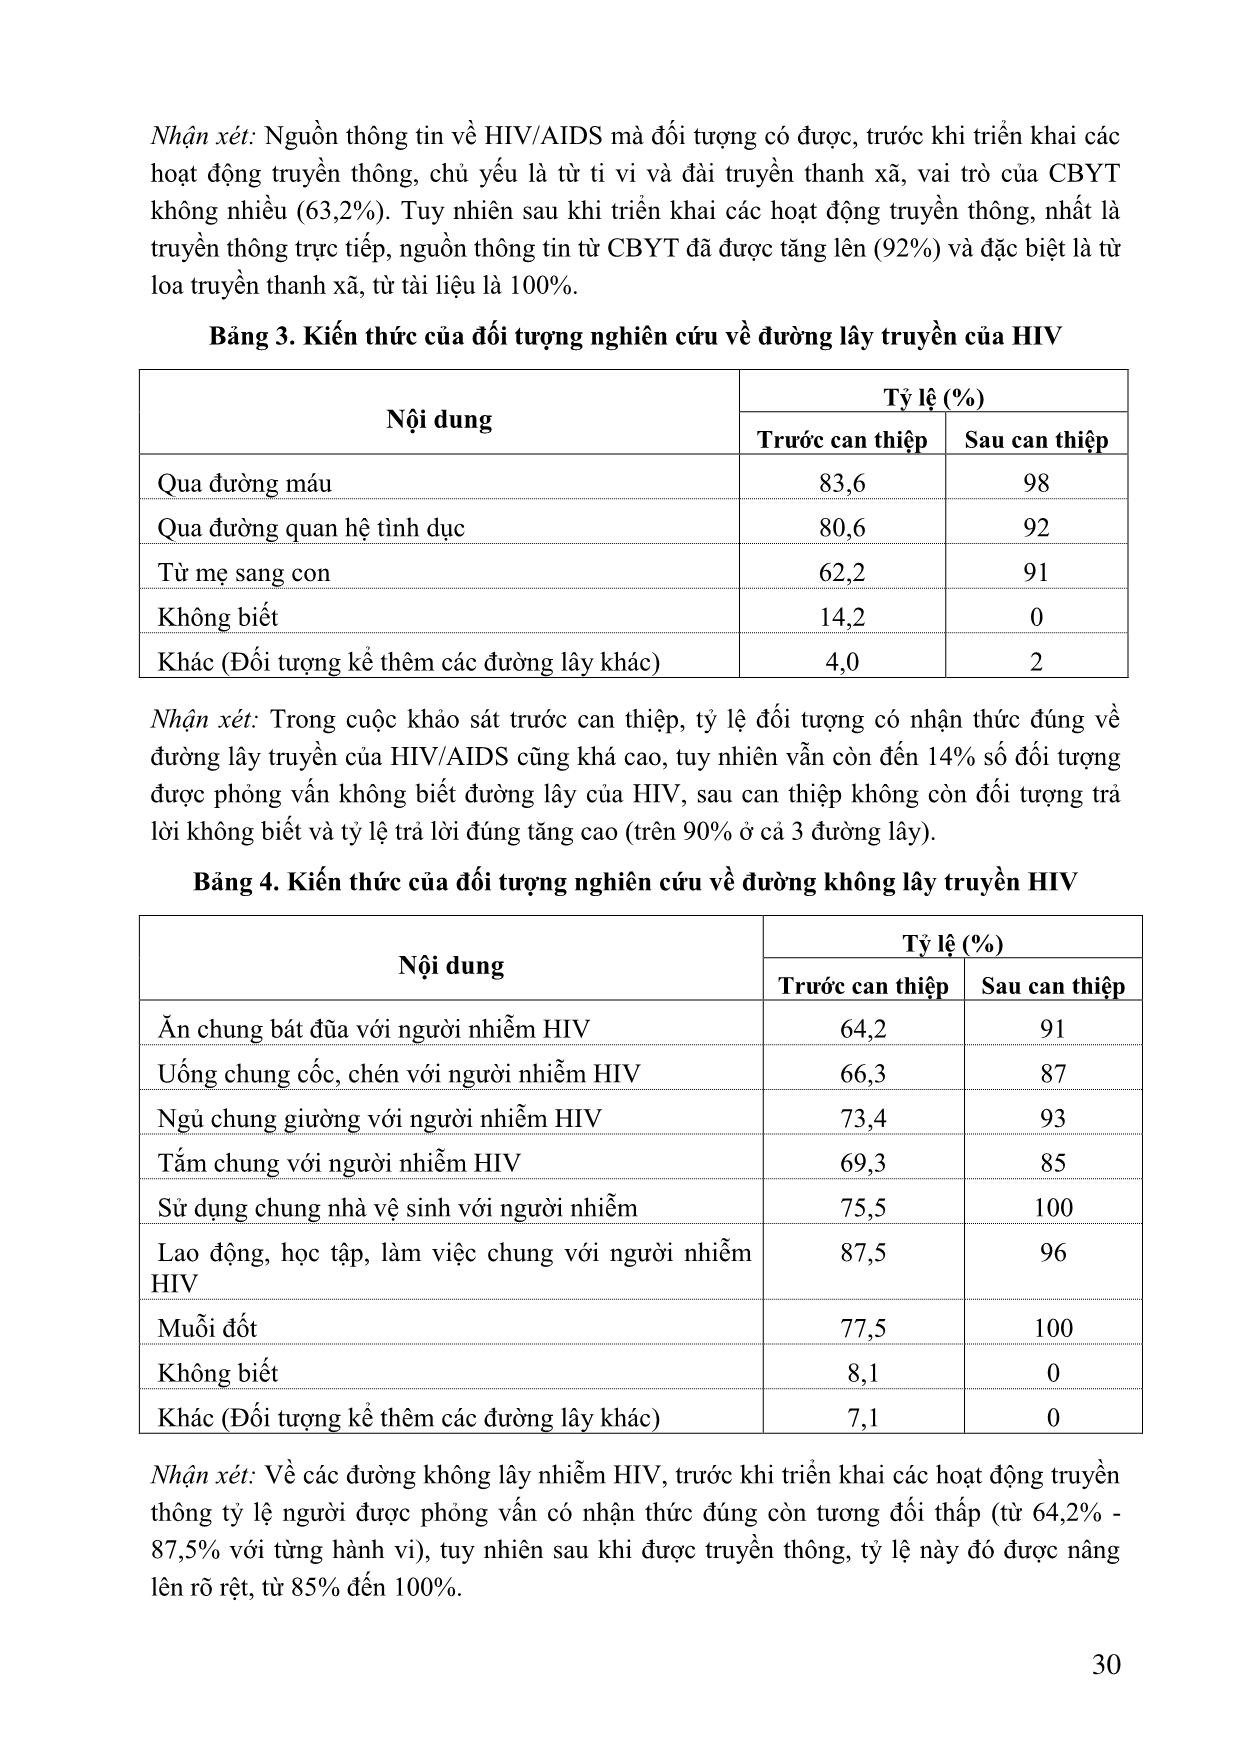 Đánh giá hiệu quả các hoạt động truyền thông thay đổi hành vi trong phòng chống HIV/AIDS tại xã Gia Sinh năm 2009-2010 trang 4